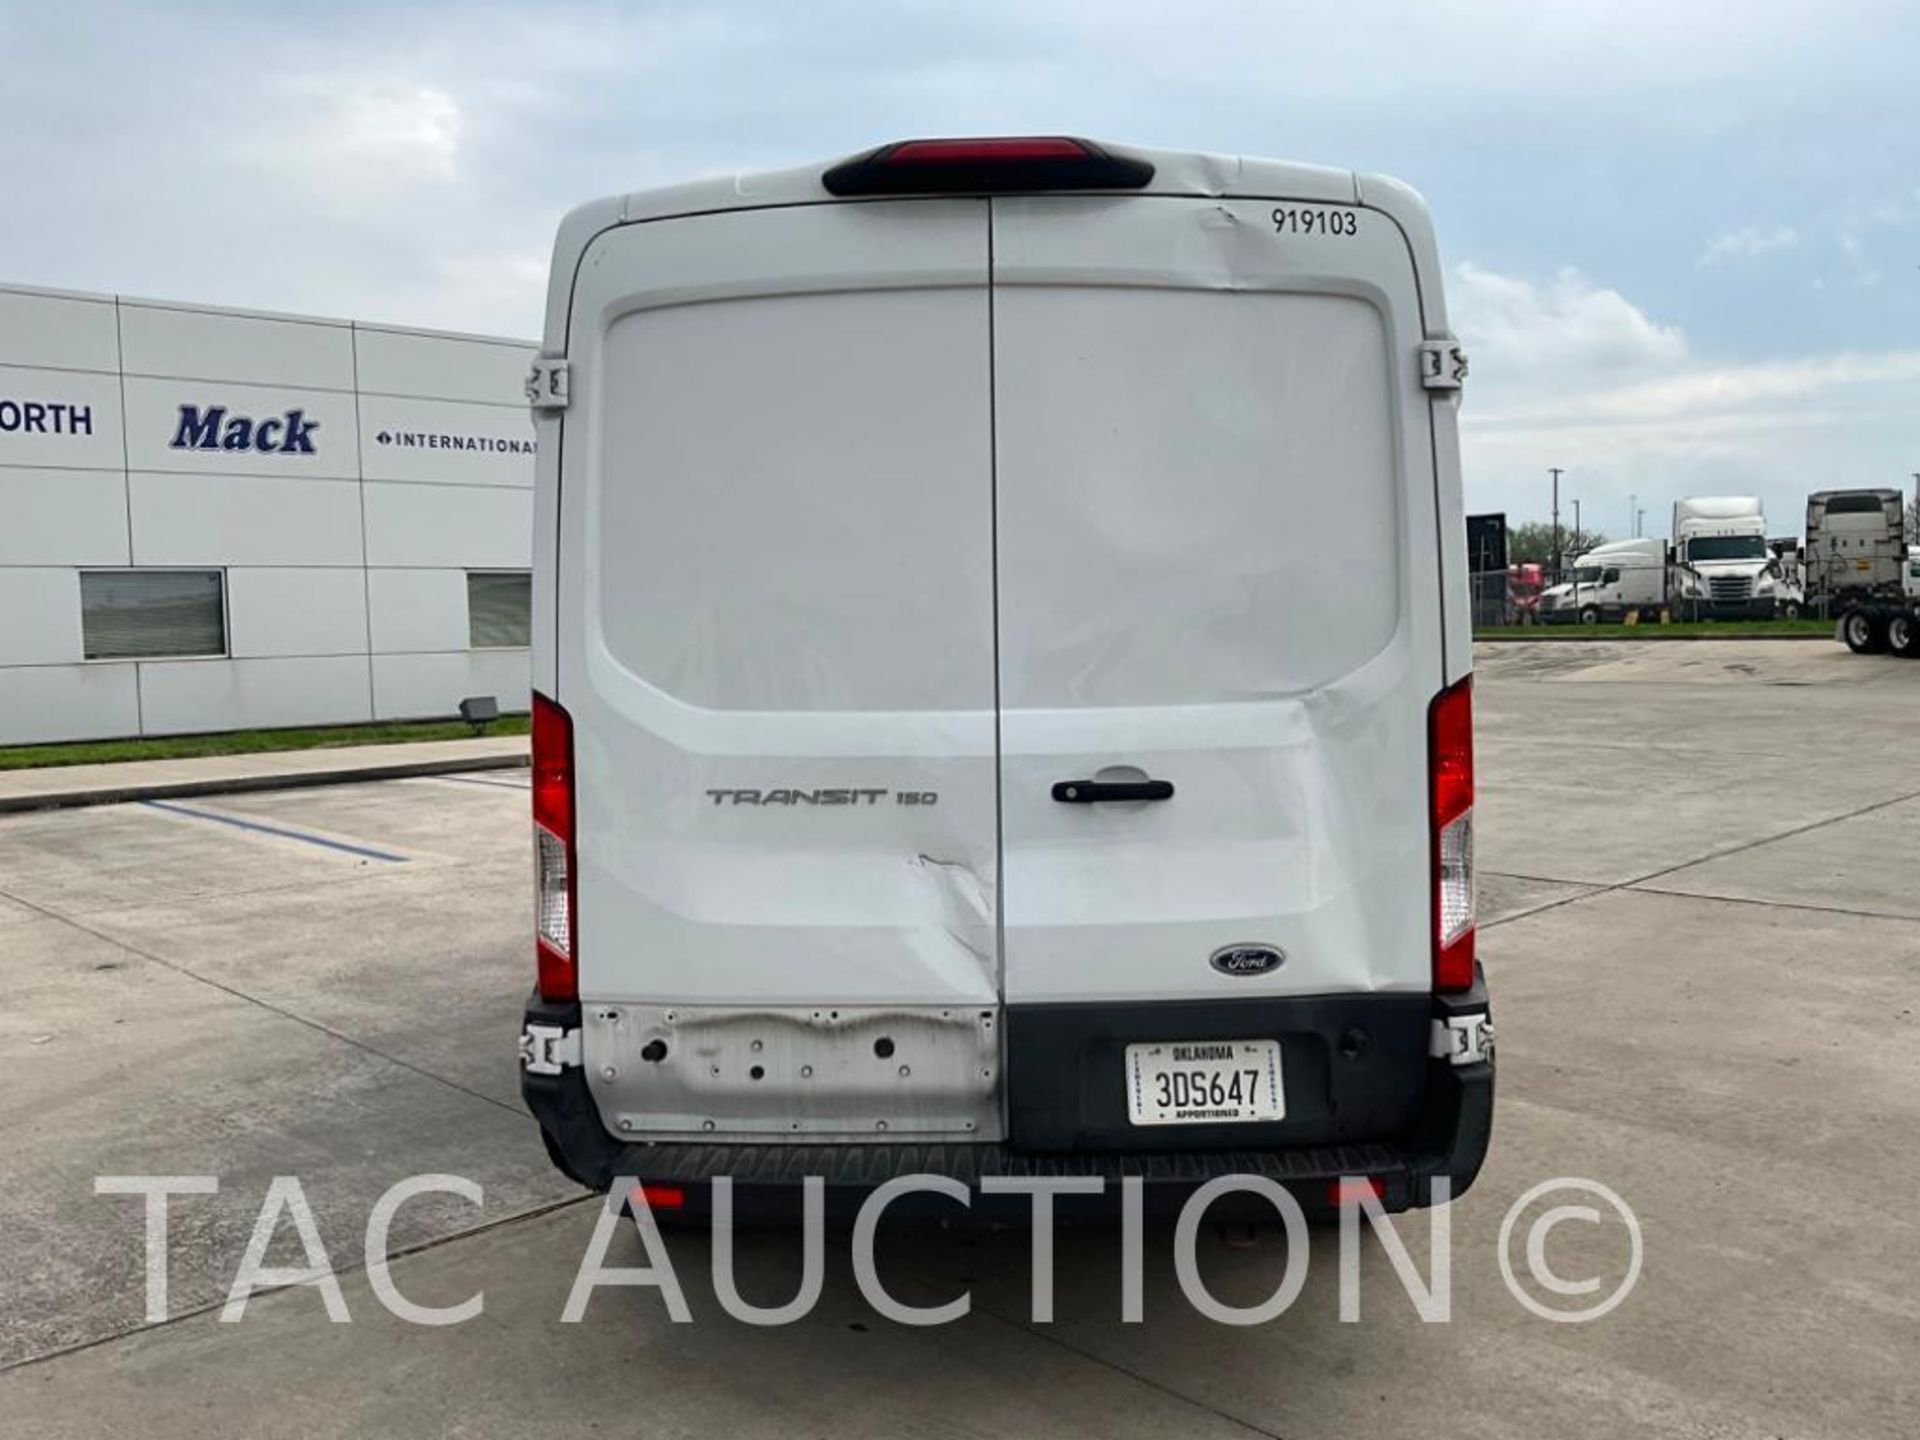 2019 Ford Transit 150 Cargo Van - Image 4 of 61